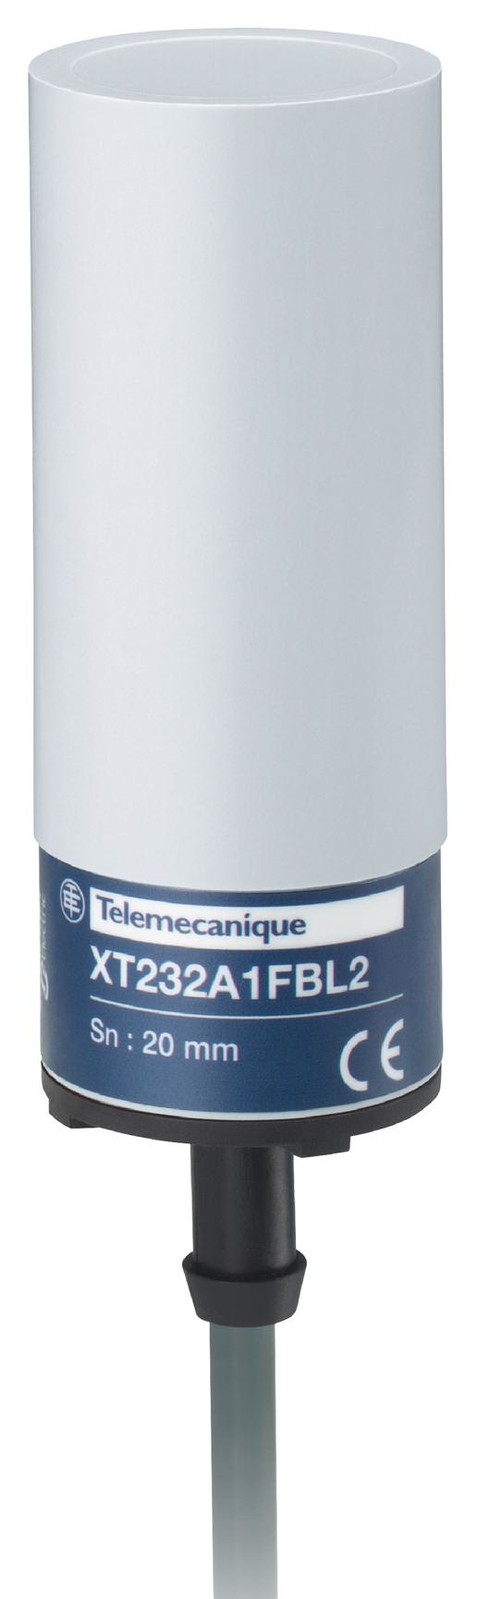 Telemecanique Sensors Xt232A1Fal2 Capacitive Sensor, 20Mm, Digital